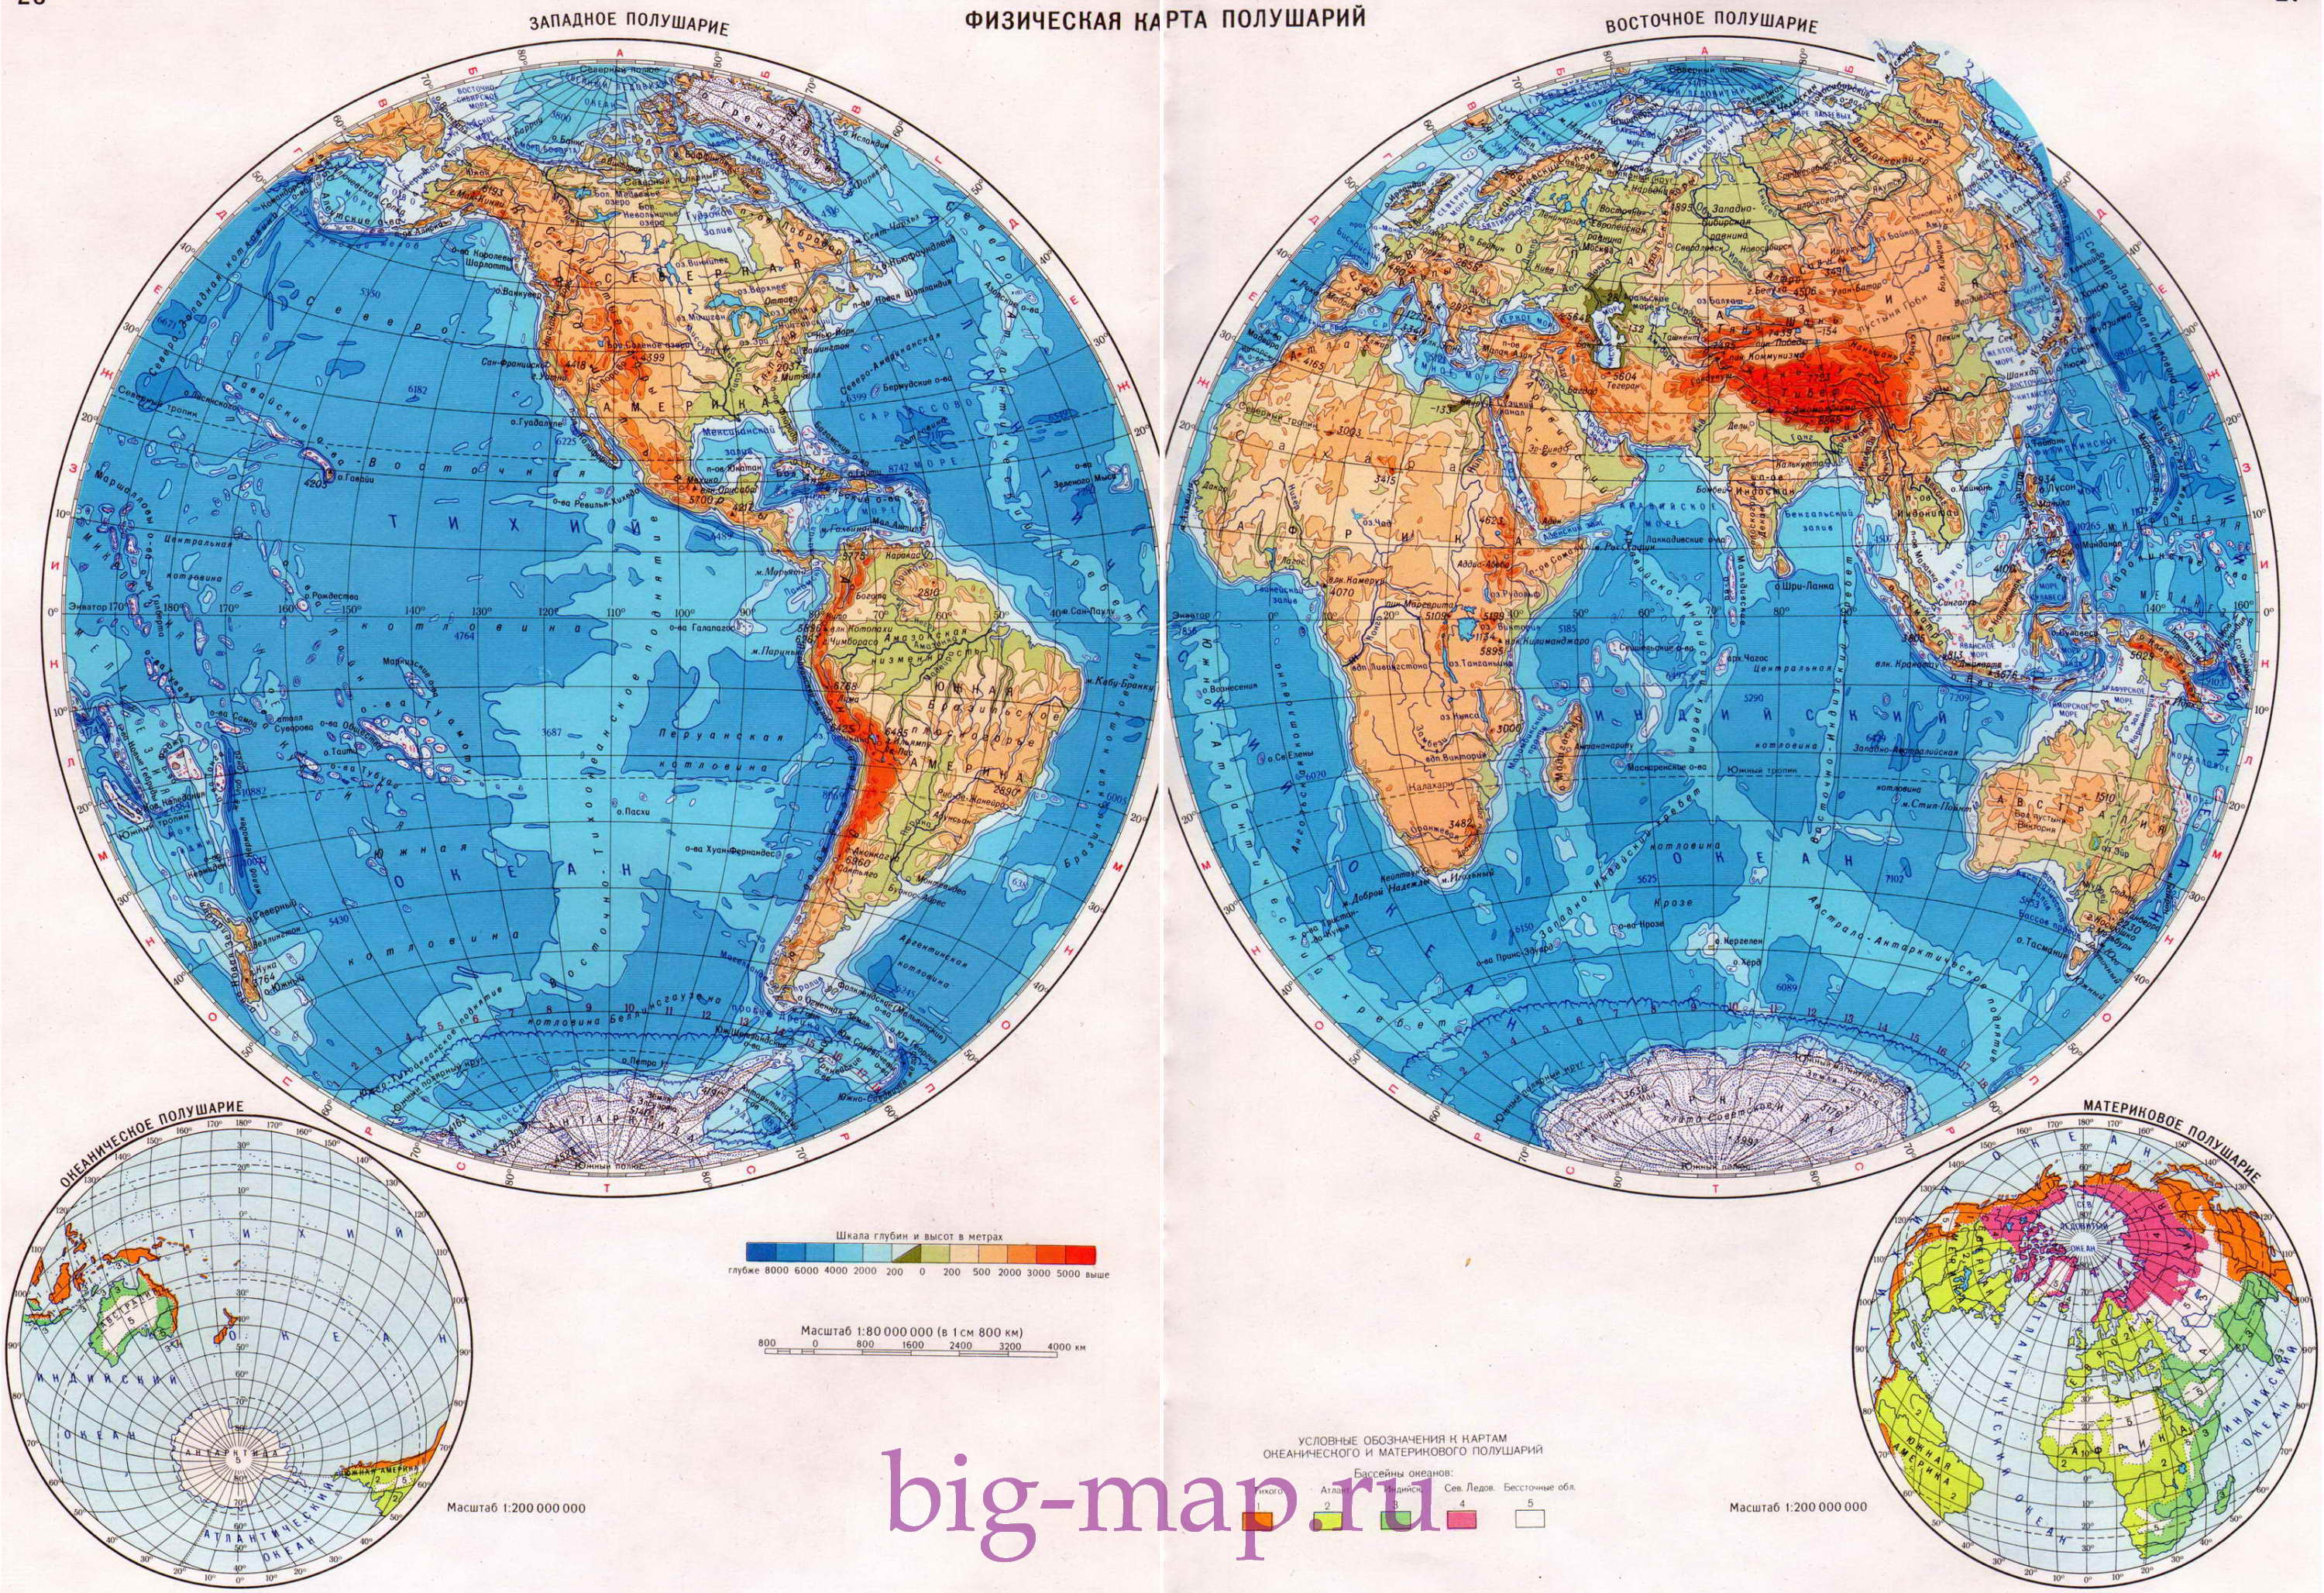  Физическая карта полушарий Земли. Карта полушарий на русском языке, A0 - 